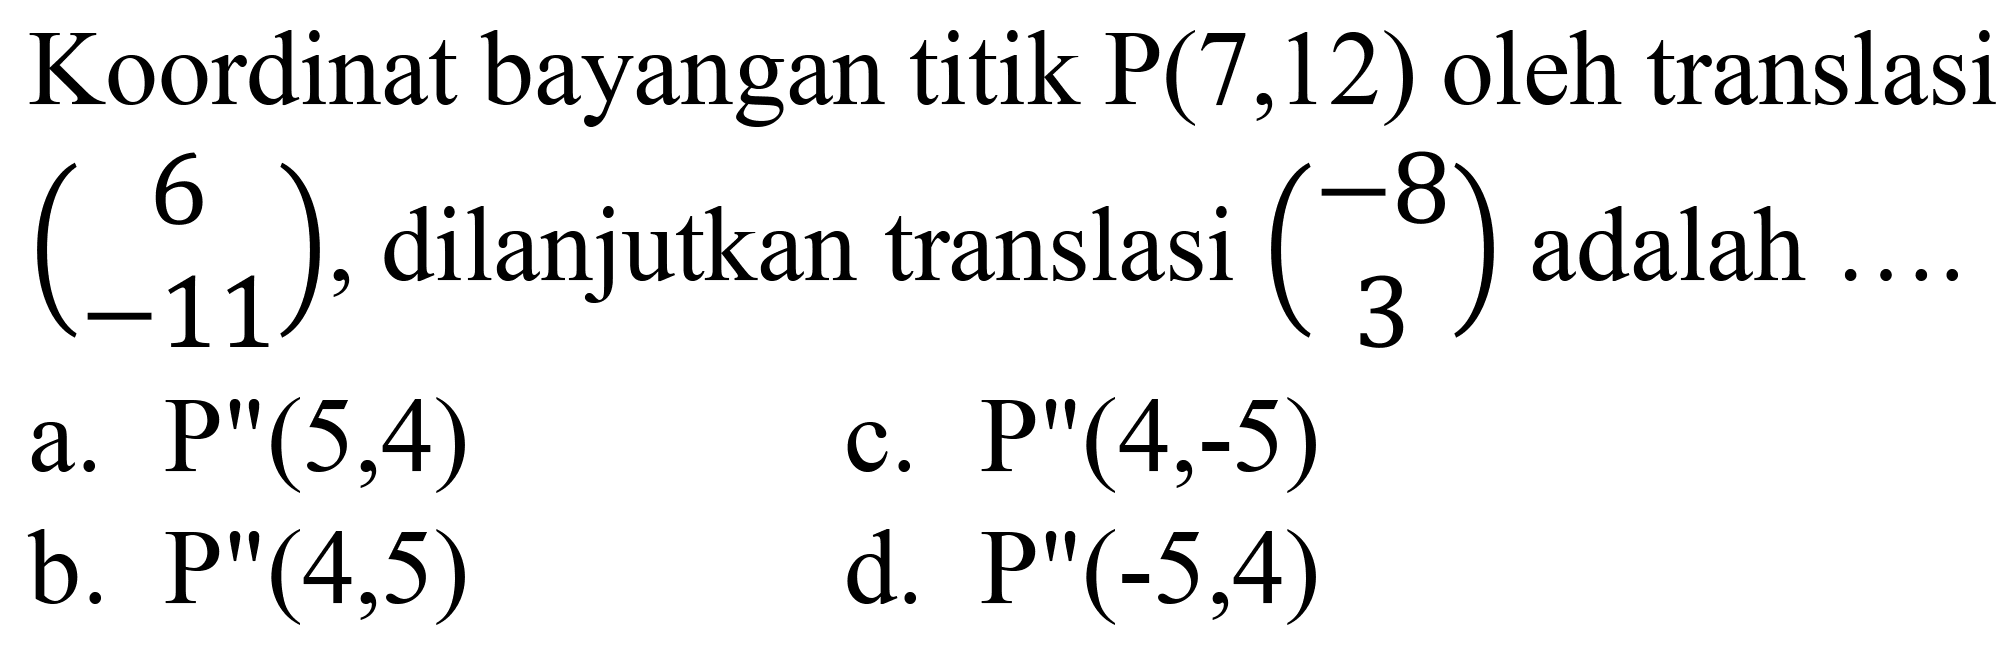 Koordinat bayangan titik  P(7,12)  oleh translasi  (6  -11) , dilanjutkan translasi  (-8  3)  adalah ...
a.  P^(prime prime)(5,4) 
c.  P^(prime prime)(4,-5) 
b.  P^(prime prime)(4,5) 
d.  P^(prime prime)(-5,4) 